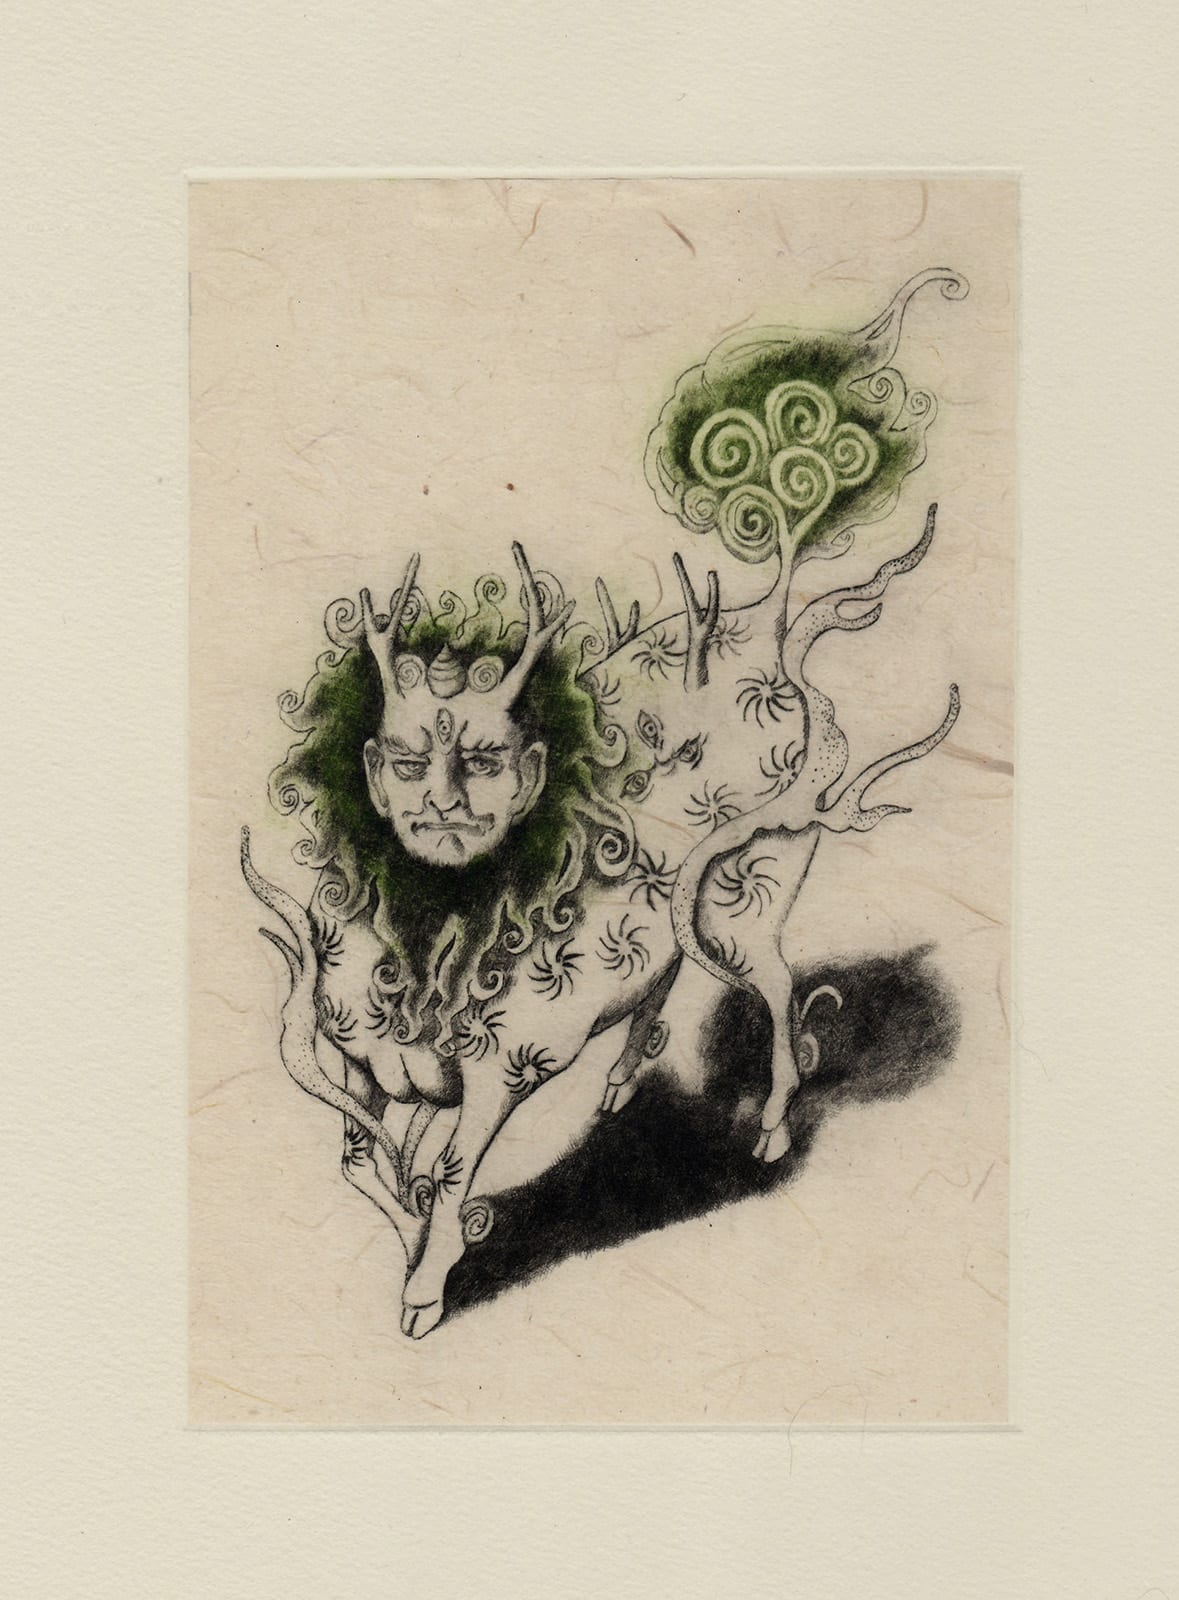 Hakutaku (drypoint etching by Yaemi Shigyo)